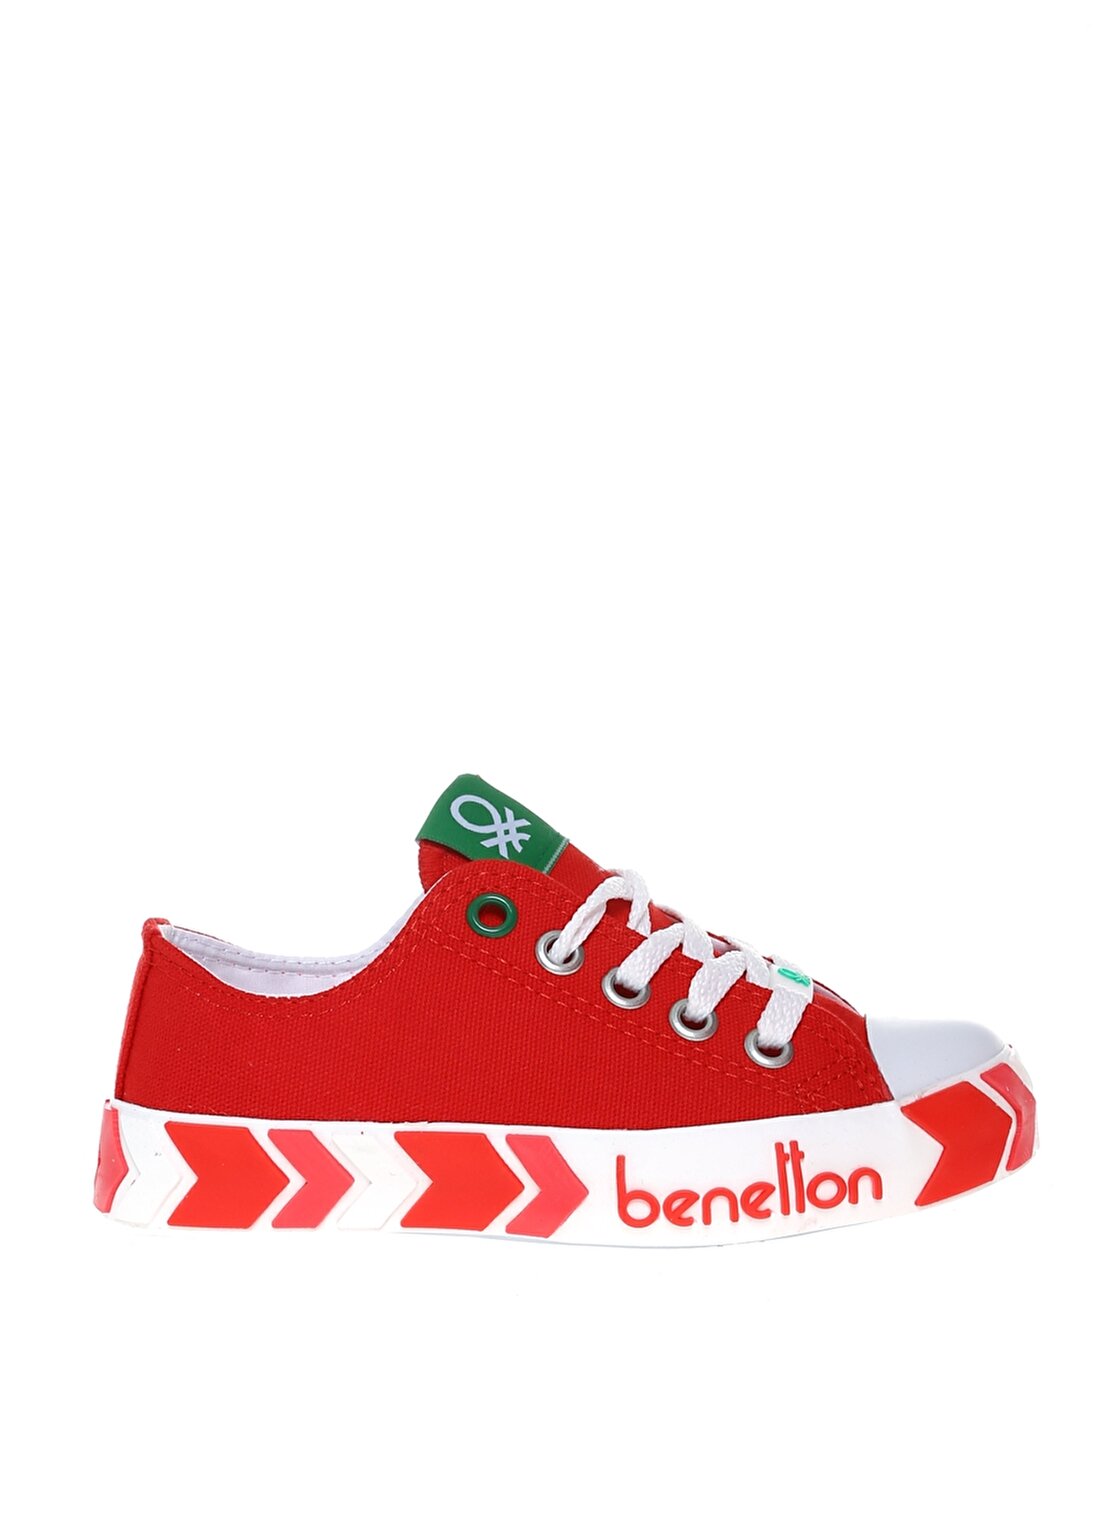 Benetton Kırmızı Kız Çocuk Keten Yürüyüş Ayakkabısı BN-30633 05